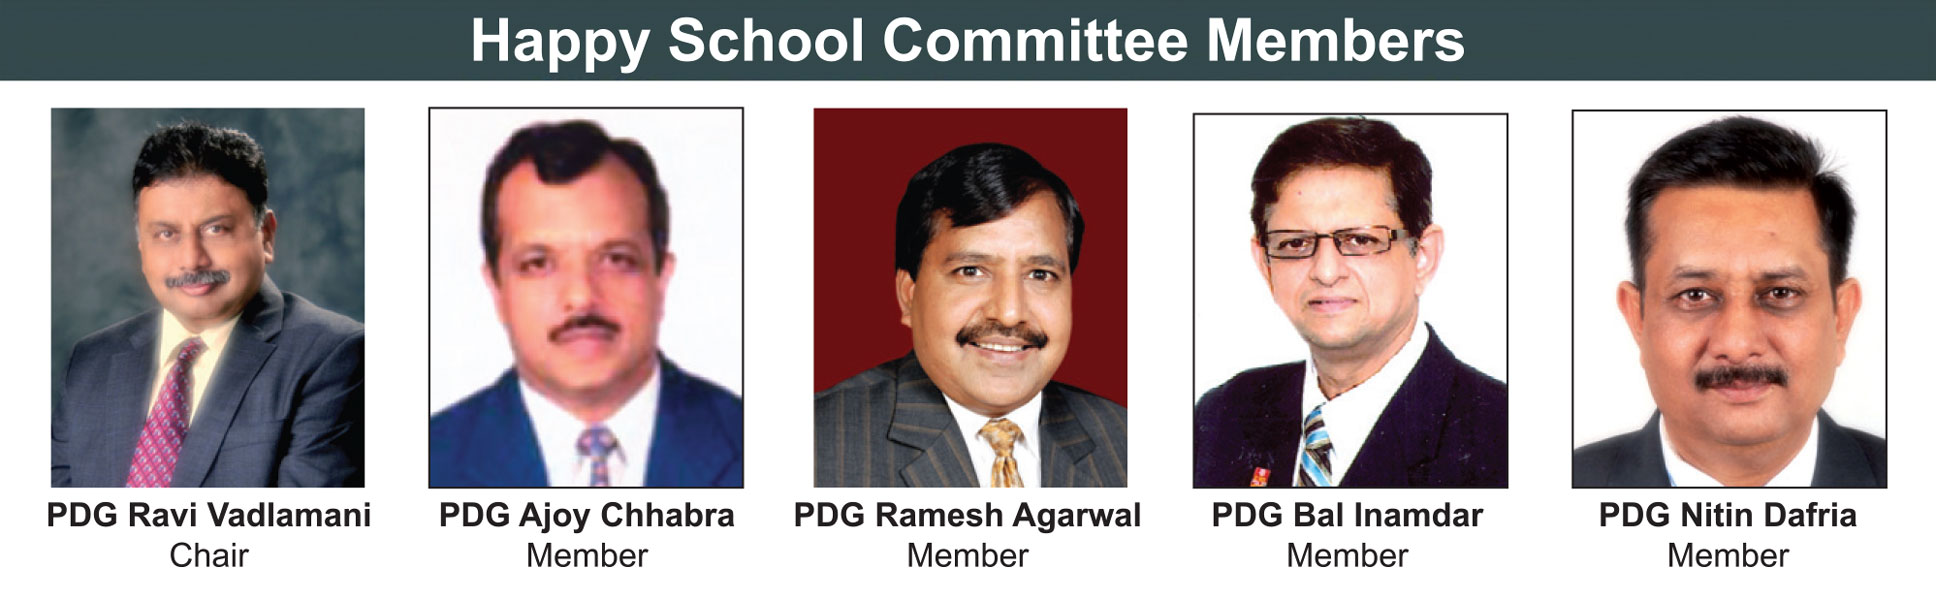 Happy-school-committee-members